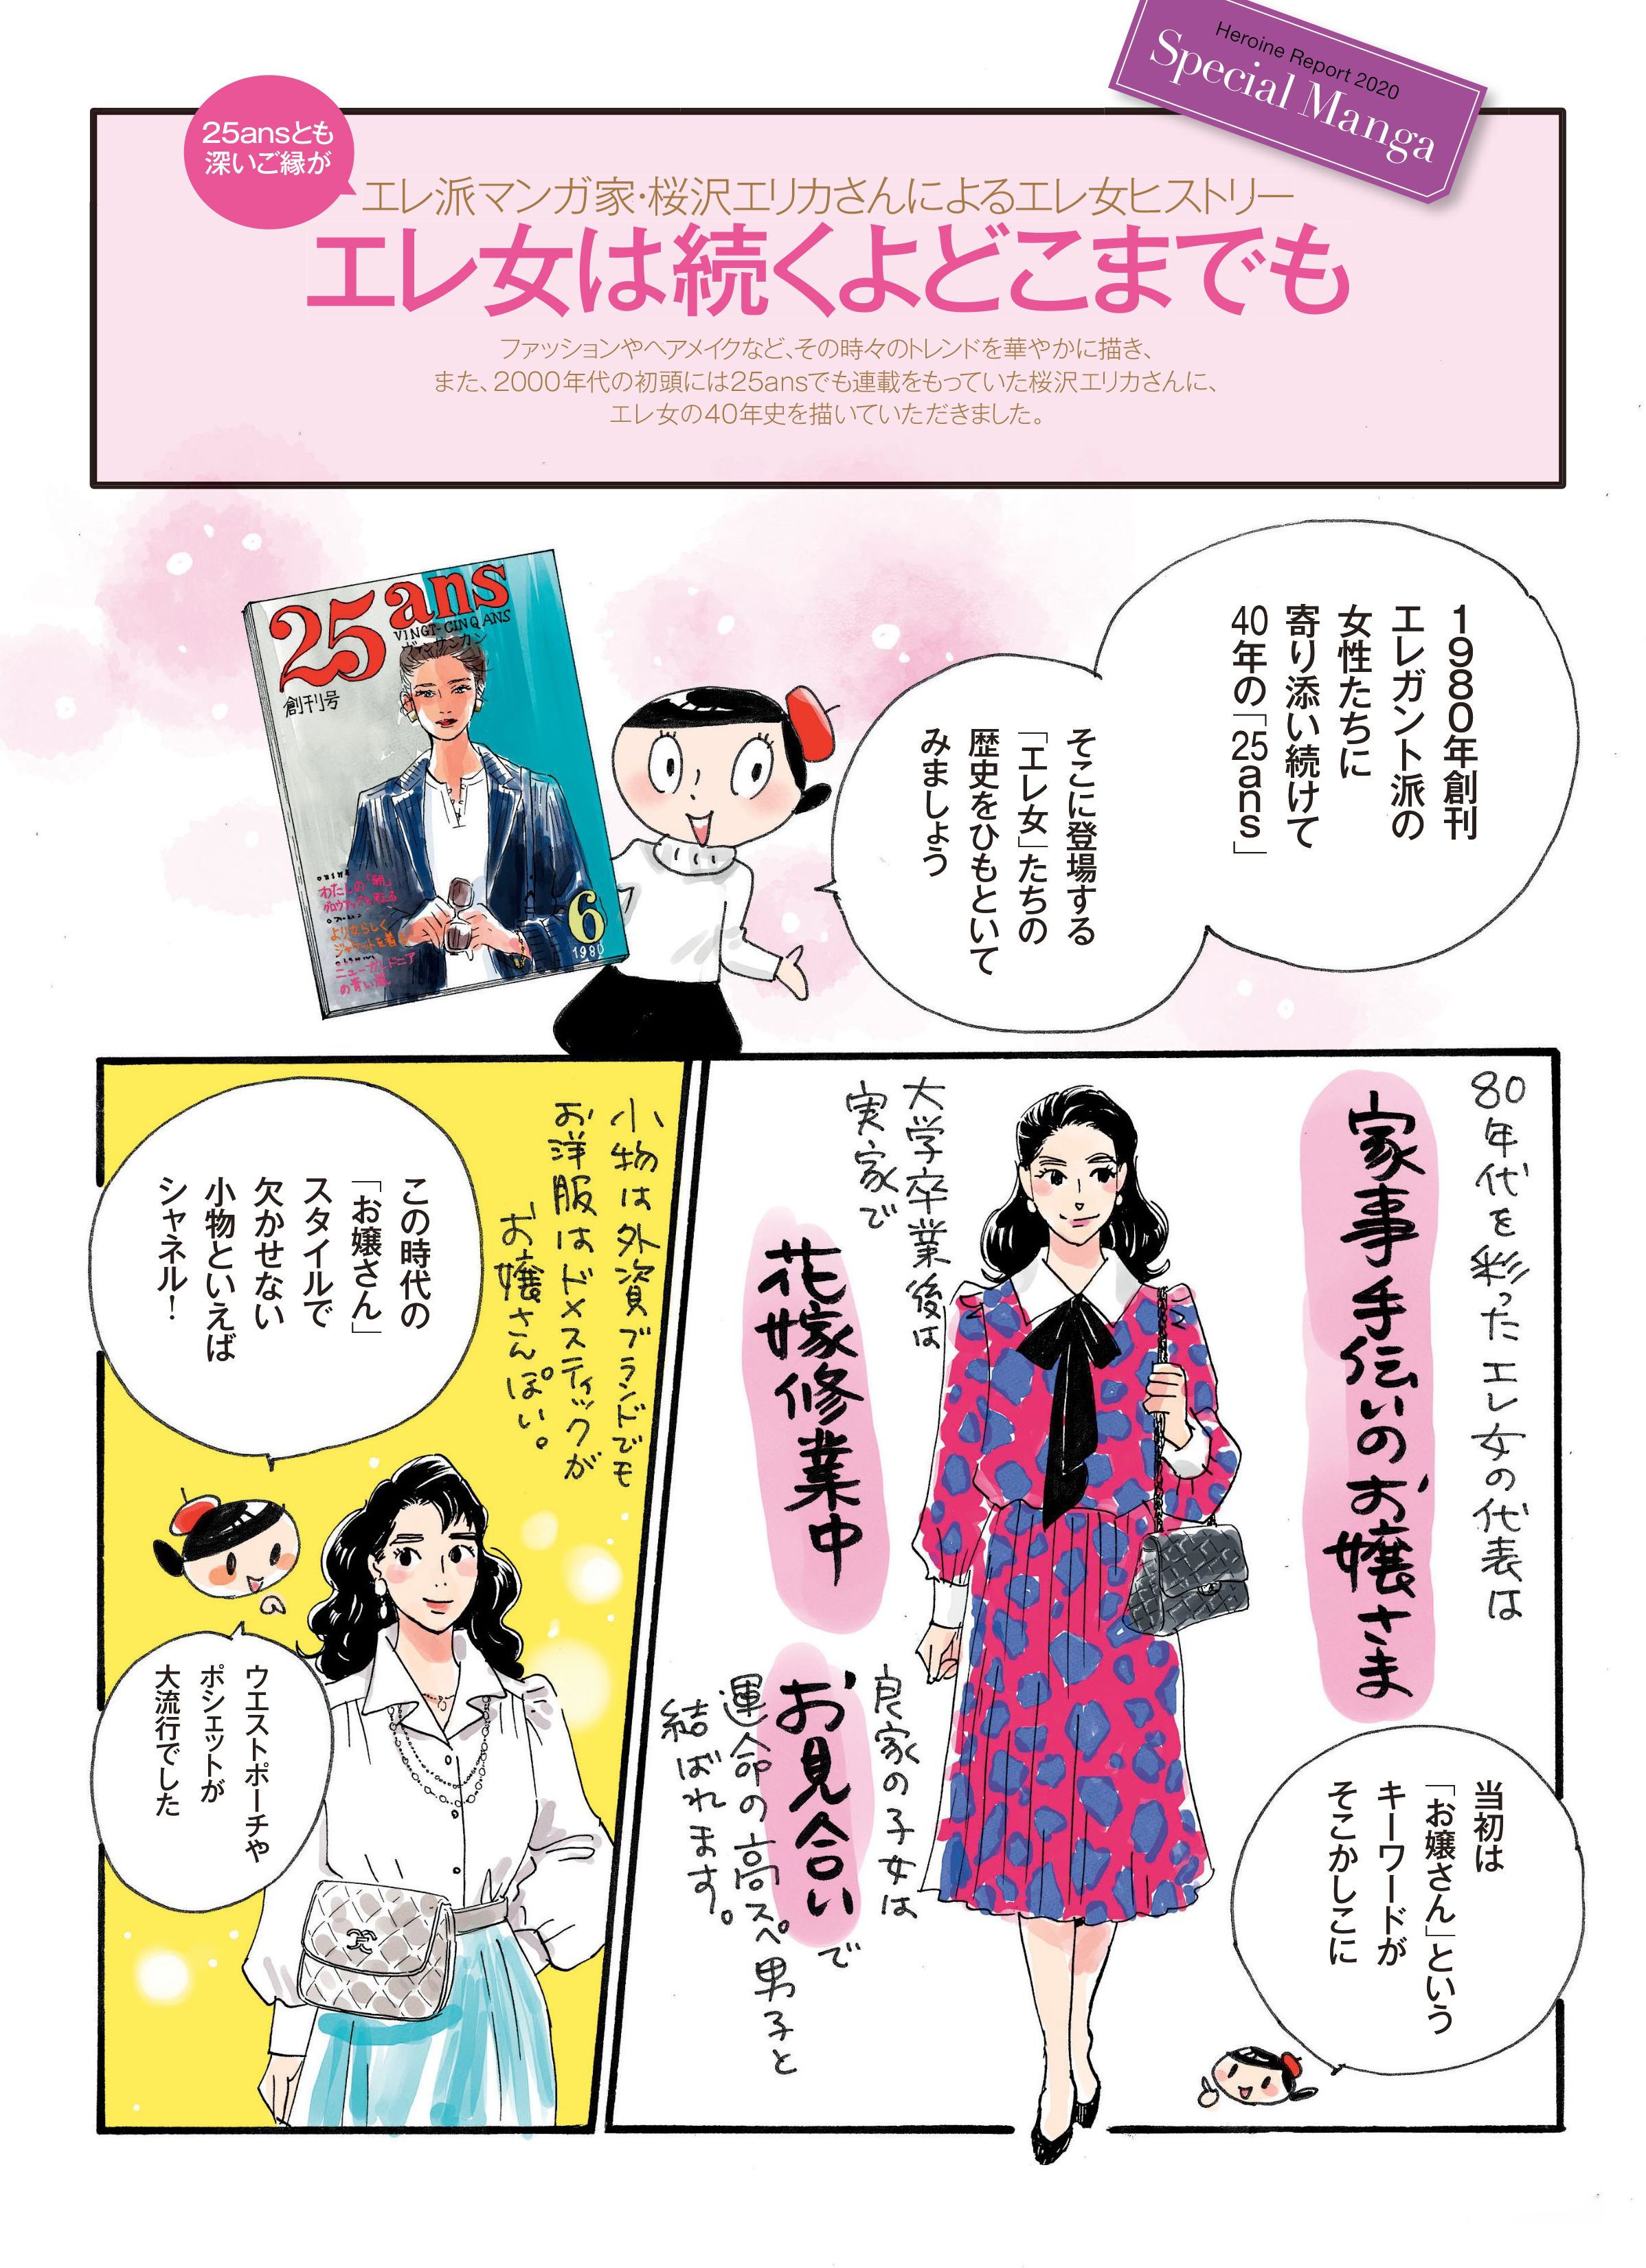 文筆家 高野麻衣さん厳選 ときめきをチャージできるおすすめ漫画18選